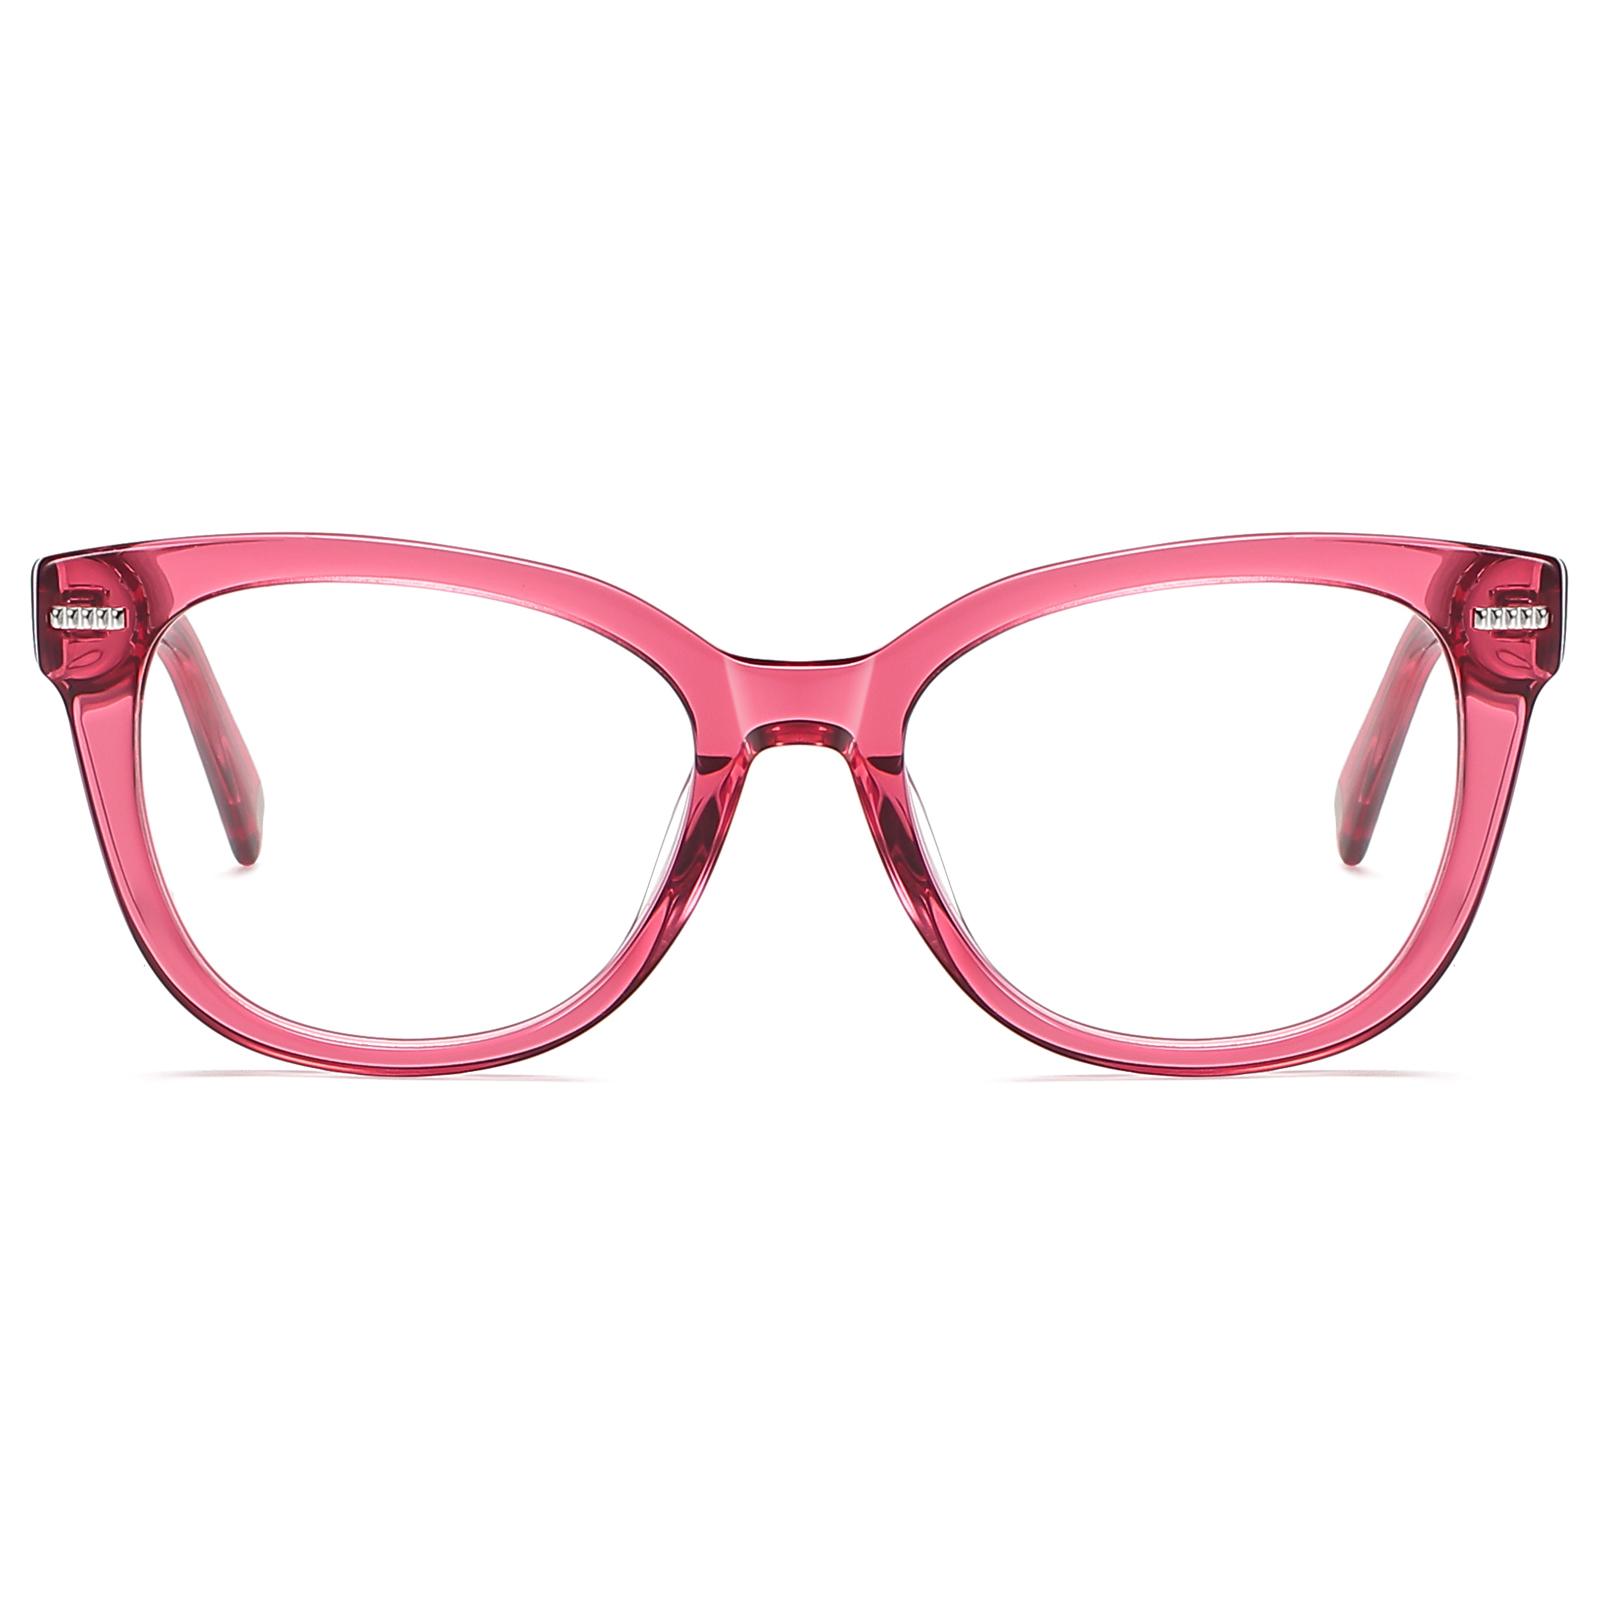 Elmi Reading Glasses for Women Round Red Eyeglasses Readers